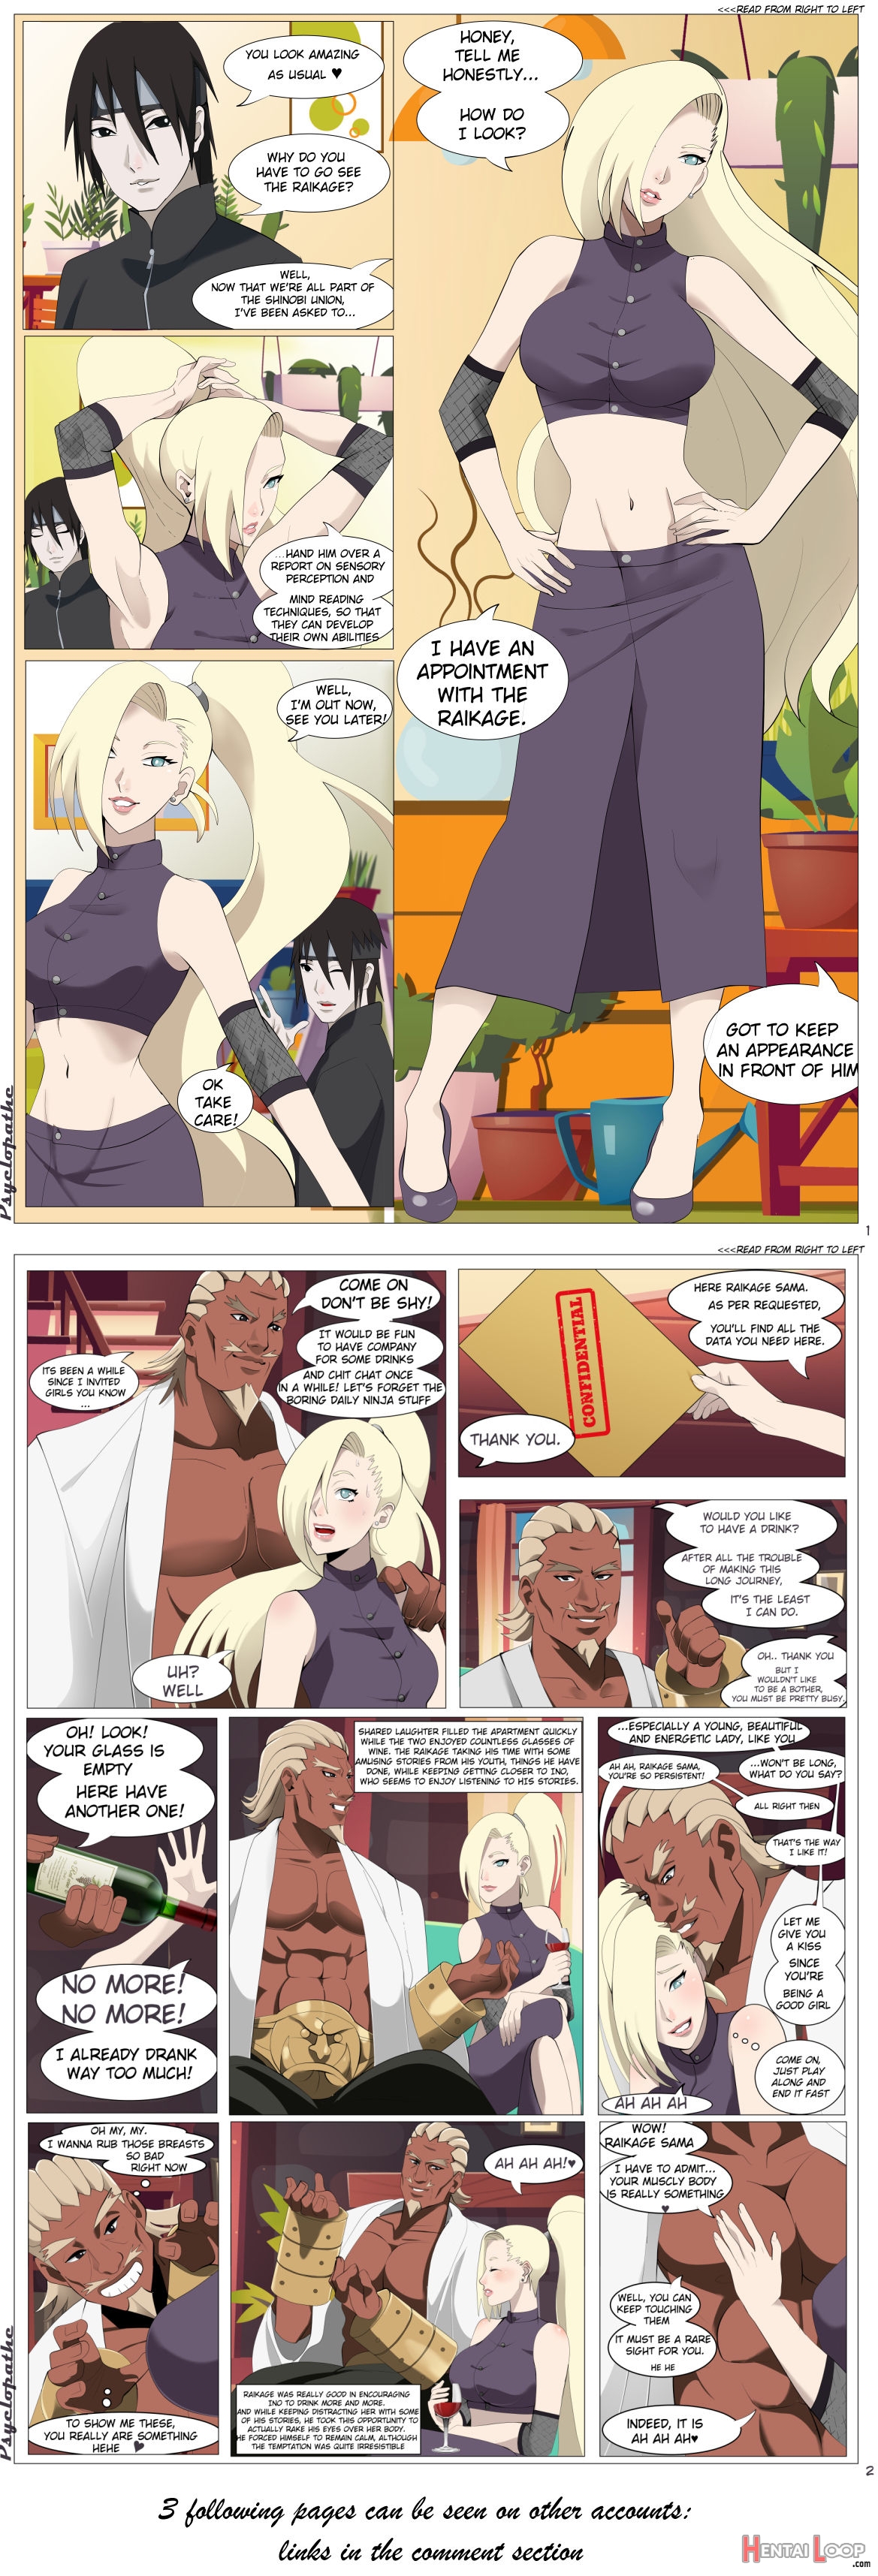 ]cm - Manga Commission R18(naruto] page 1